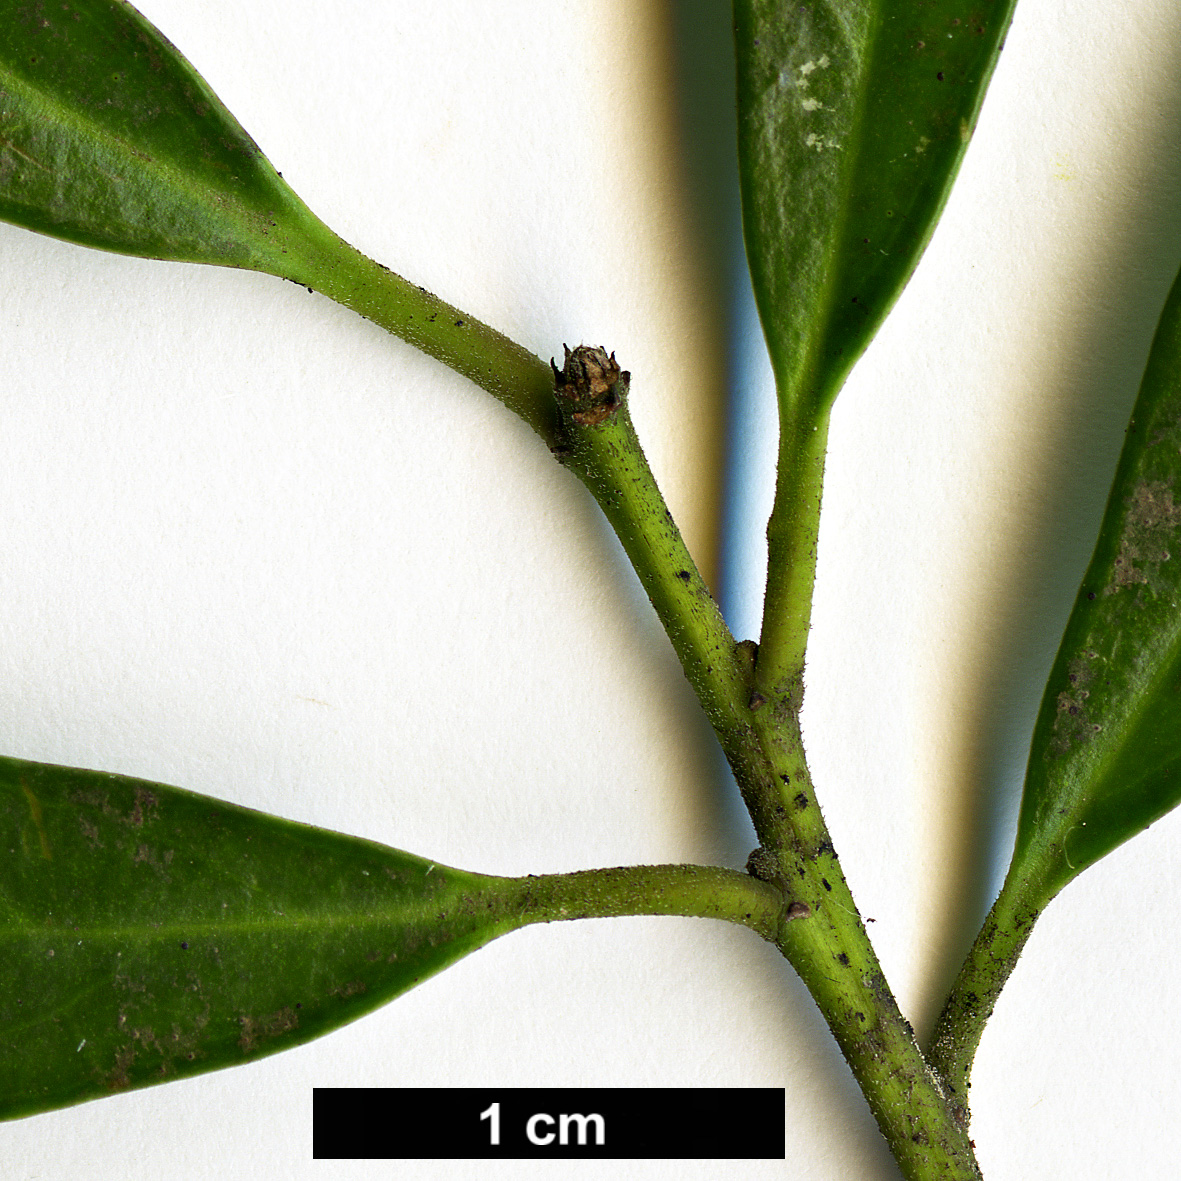 High resolution image: Family: Aquifoliaceae - Genus: Ilex - Taxon: cassine - SpeciesSub: var. angustifolia